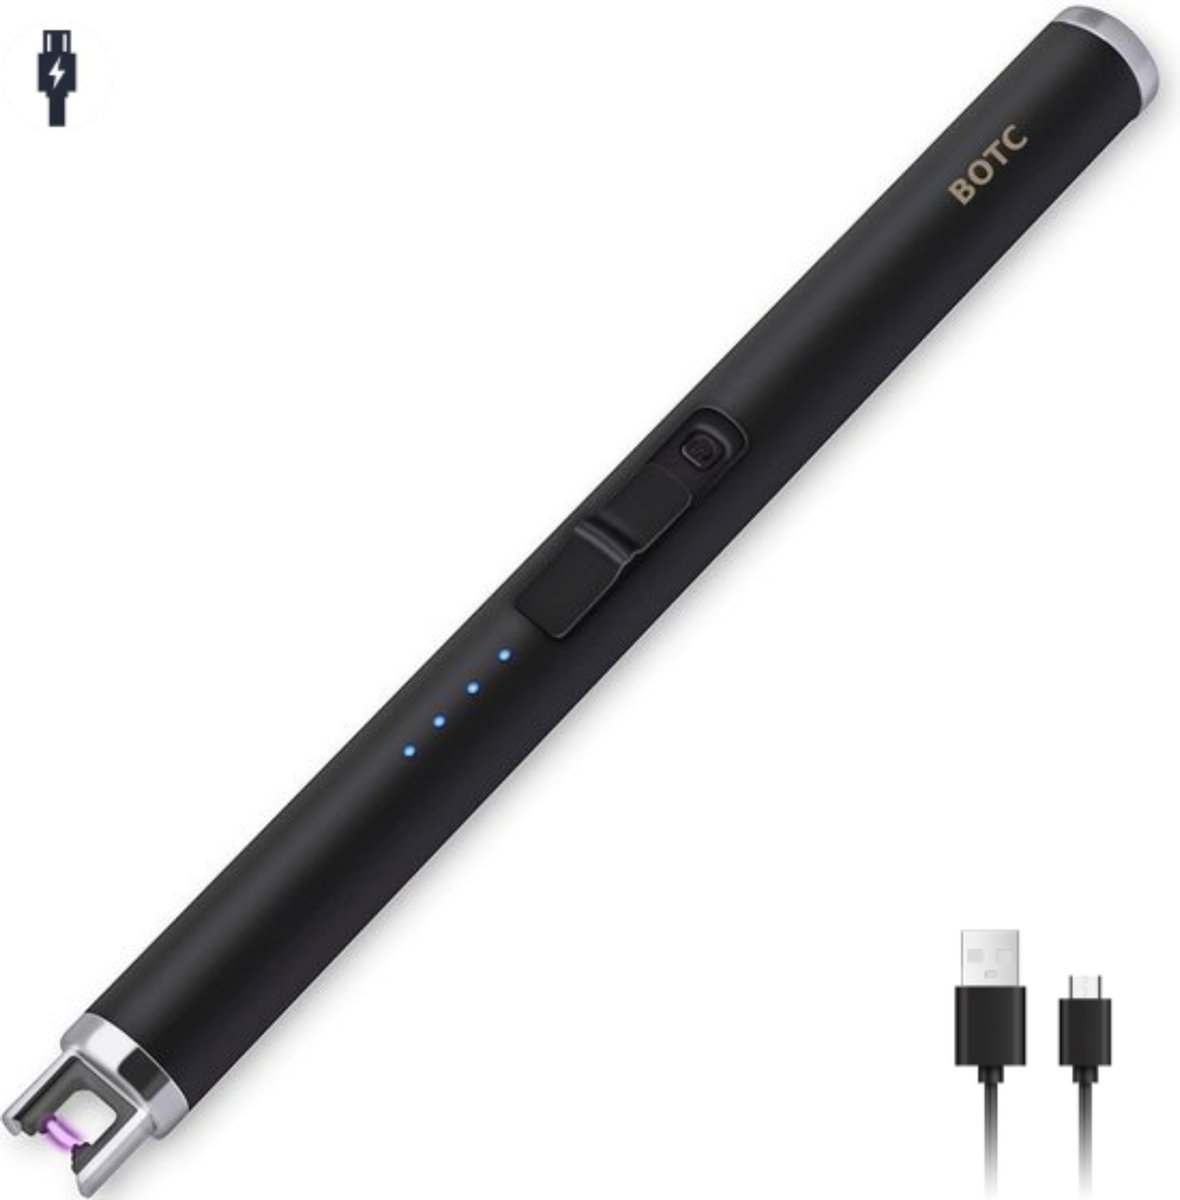 BOTC Elektrische aansteker - USB oplaadbaar - Oplaadbaar met USB kabel - Windproof - BBQ - Kaarsen - Zwart - BOTC